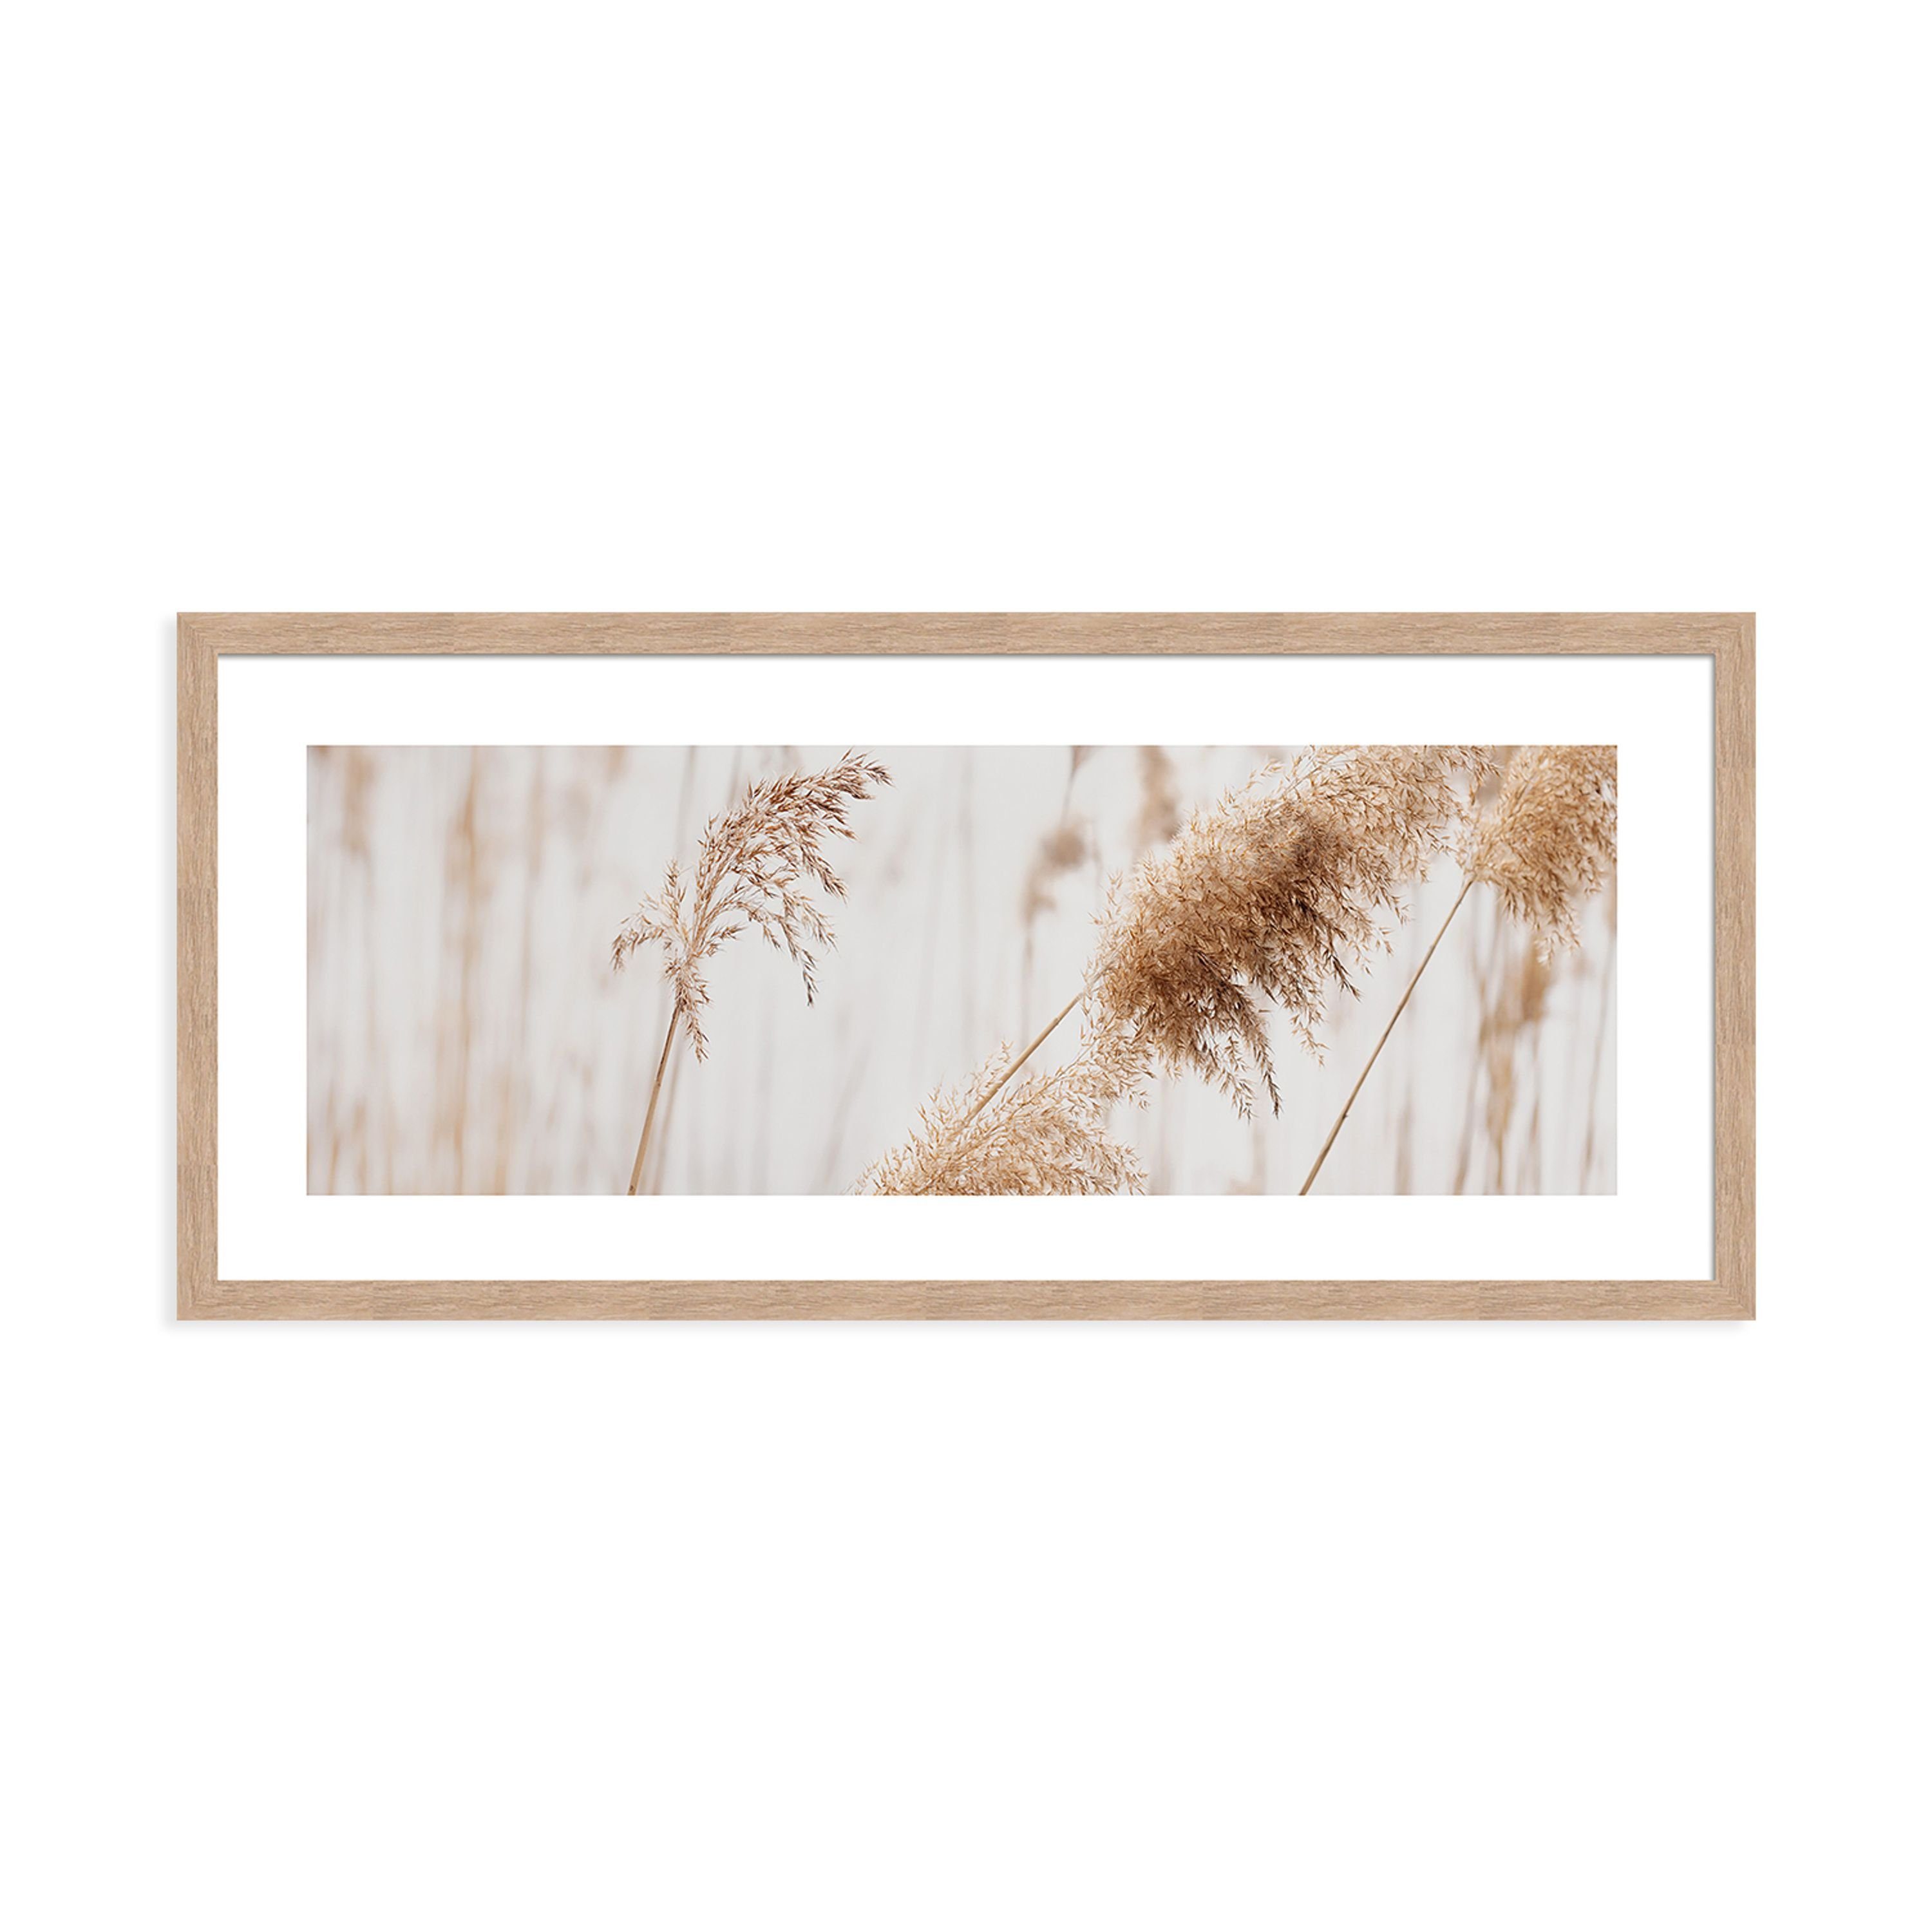 länglich 71x30cm gerahmt Bild Gräser: mit Pampas-Gras beige Rahmen mit Rahmen weiß, artissimo Design-Poster Bild